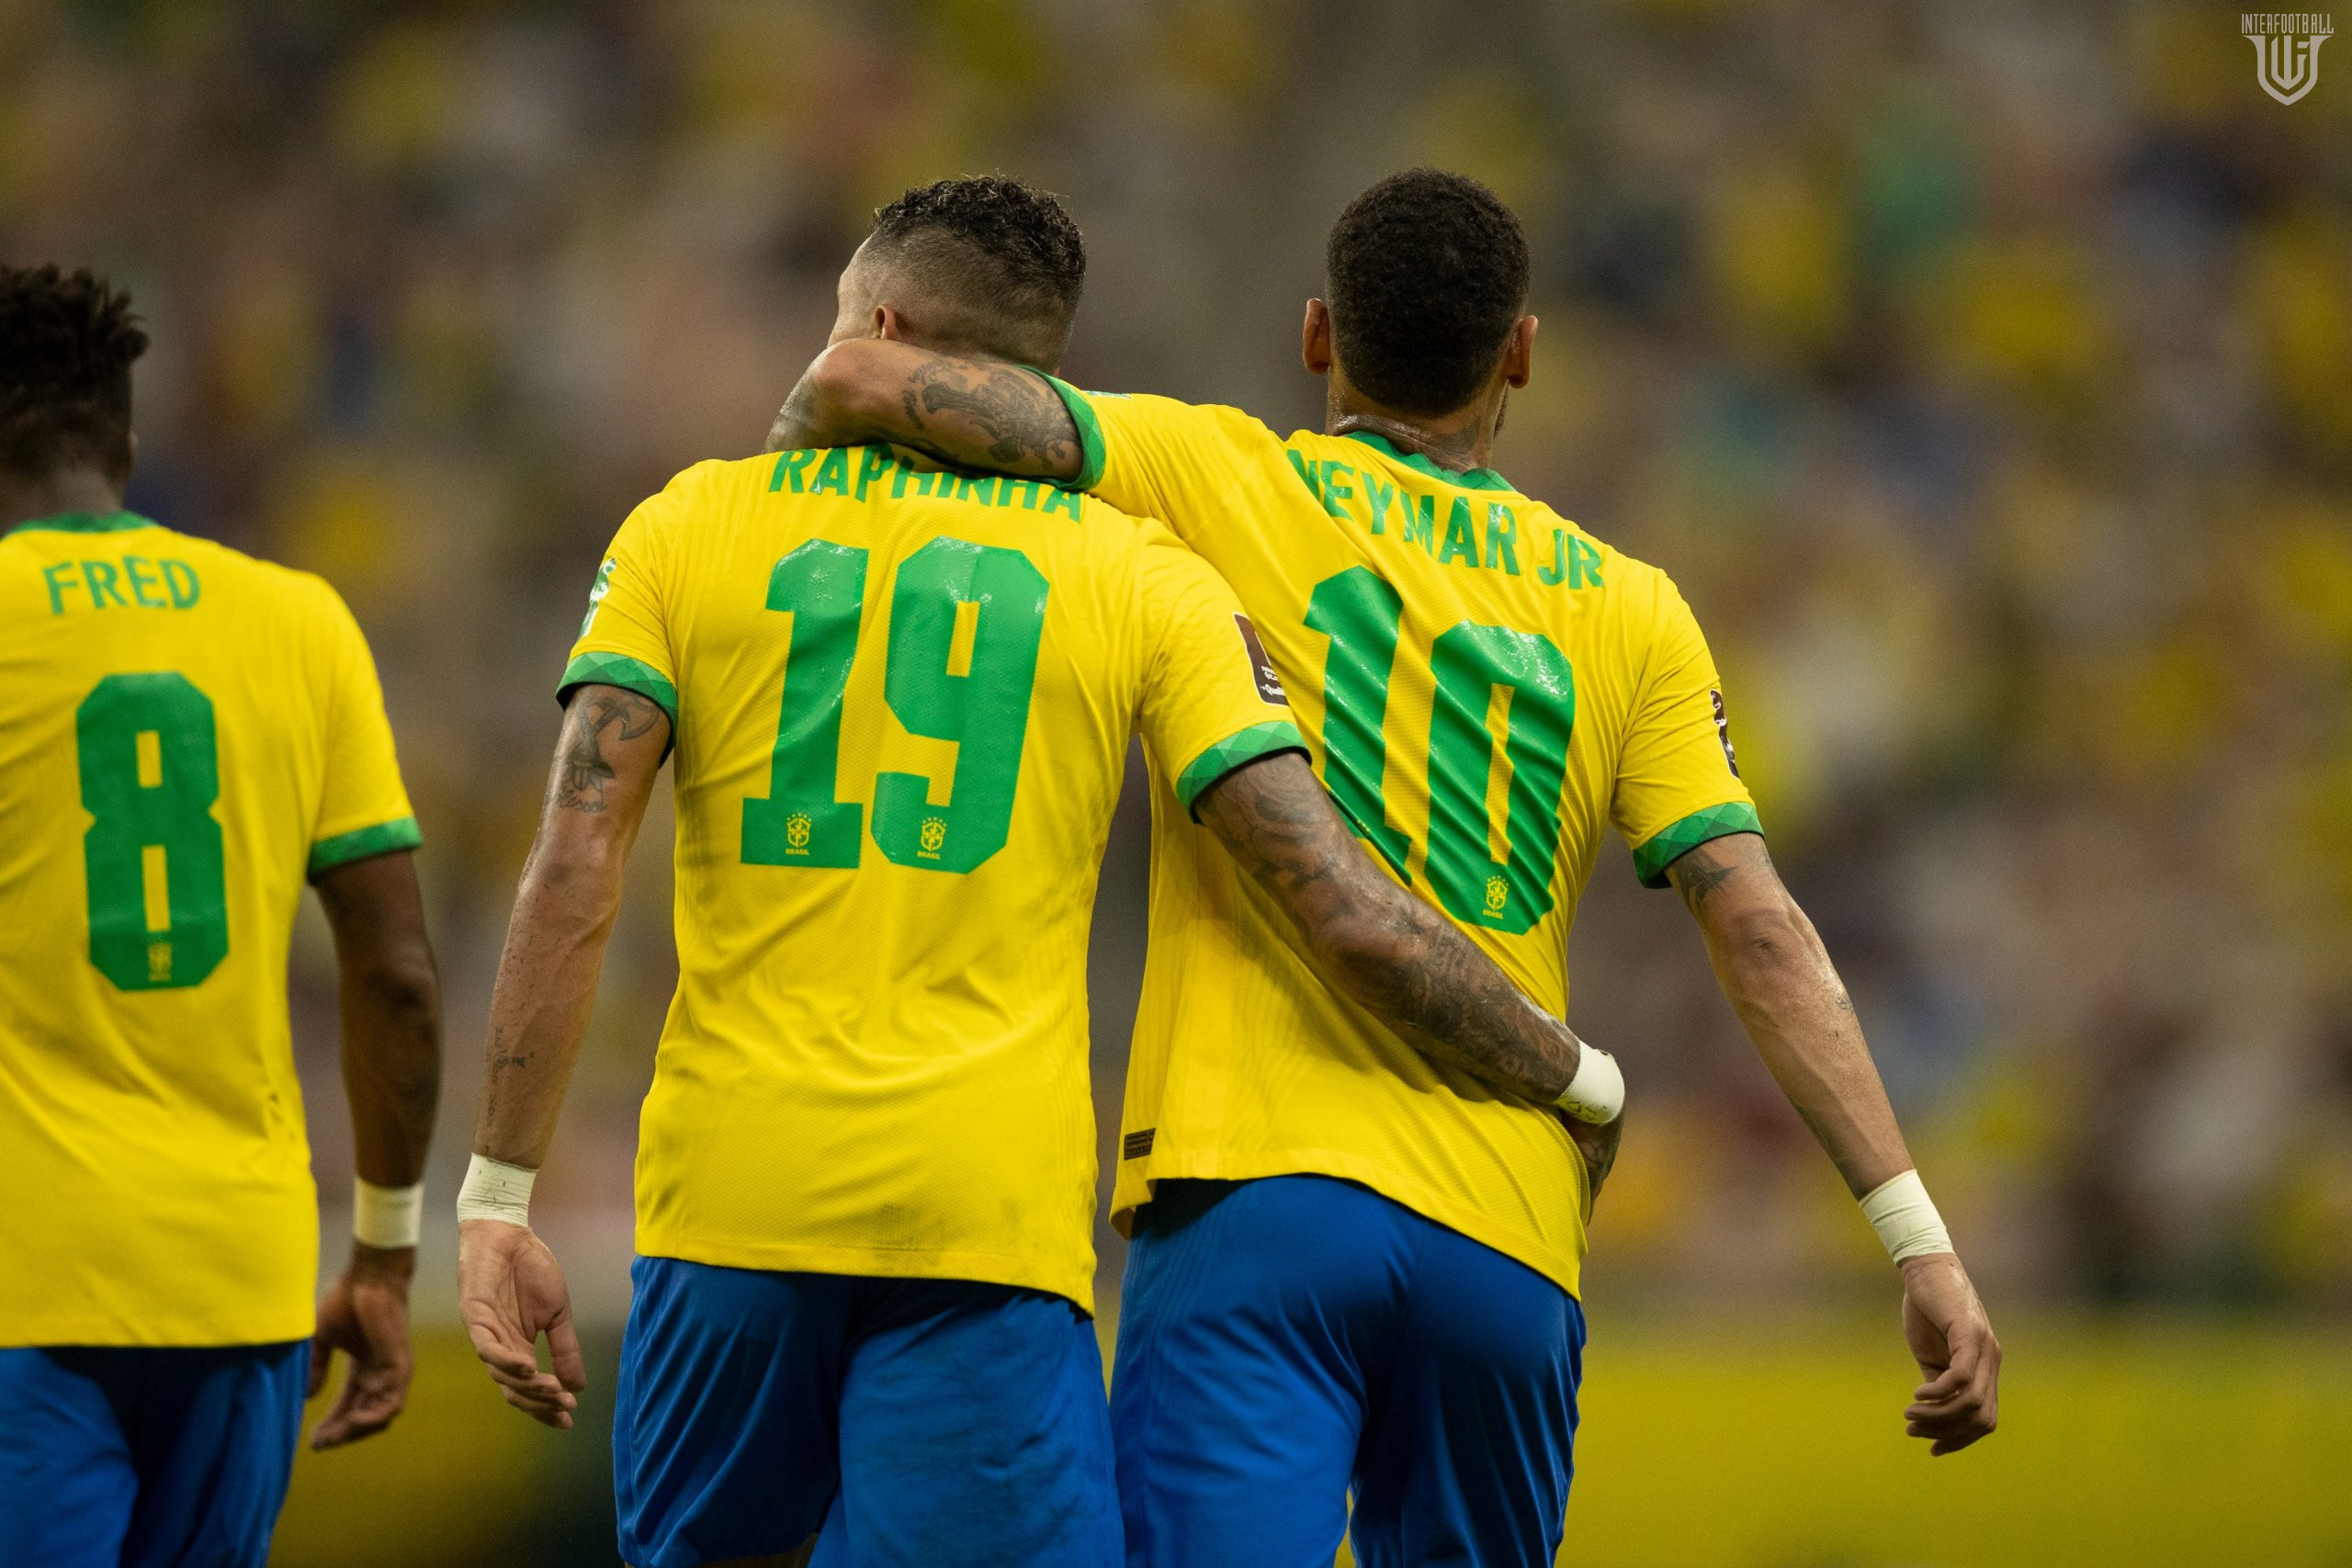 Բրազիլիան վստահ ընթանում է դեպի ԱԱ` ջախջախելով Ուրուգվային🎥